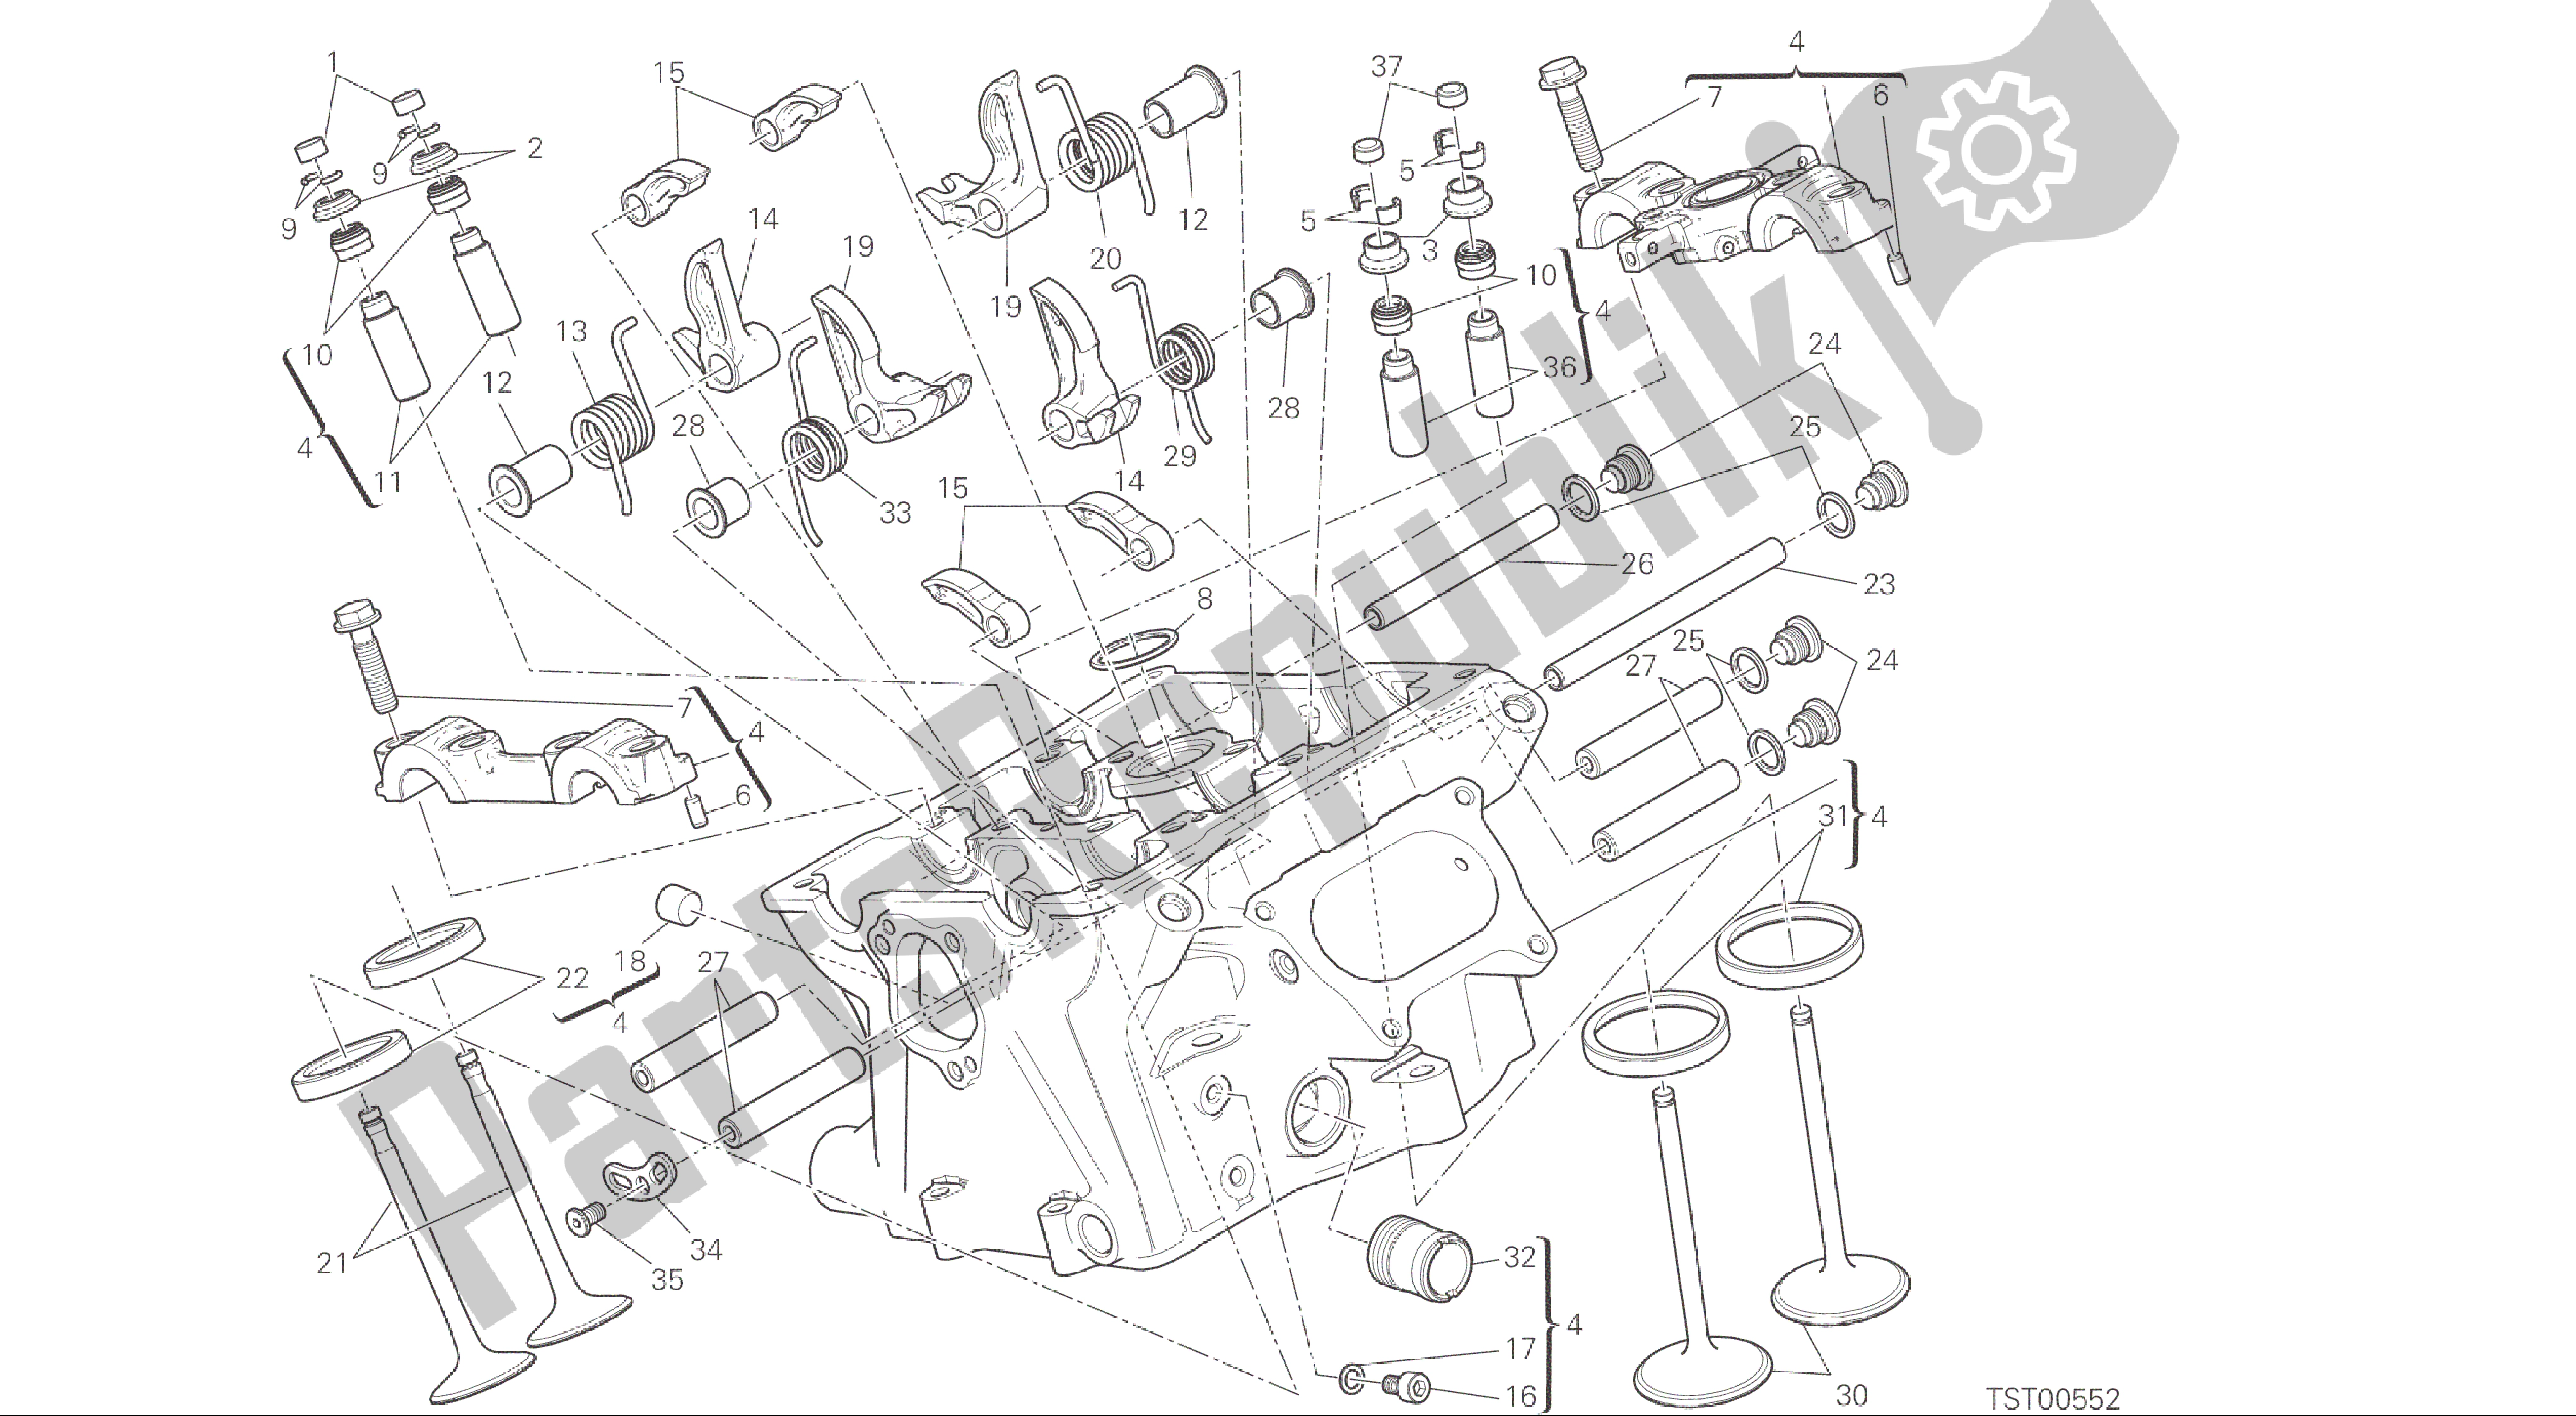 Tutte le parti per il Disegno 015 - Motore Di Gruppo Testa Verticale [xst: Cal, Cdn] del Ducati Panigale R 1200 2016